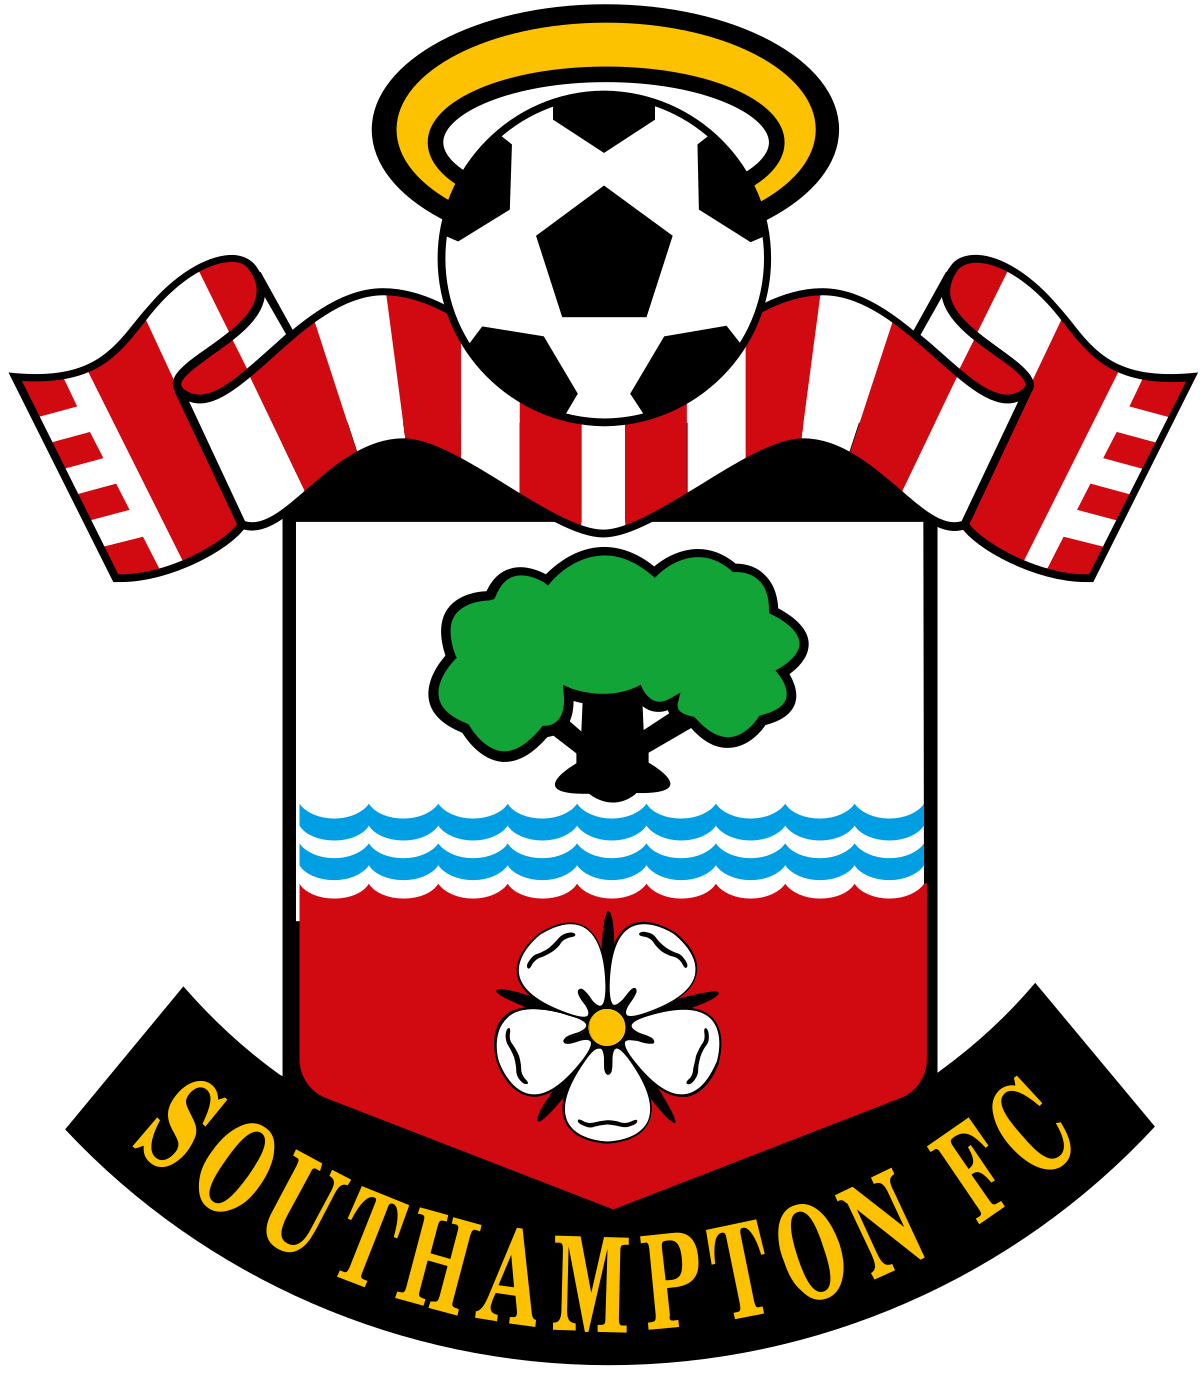 Sheffield United Football Club – Wikipédia, a enciclopédia livre